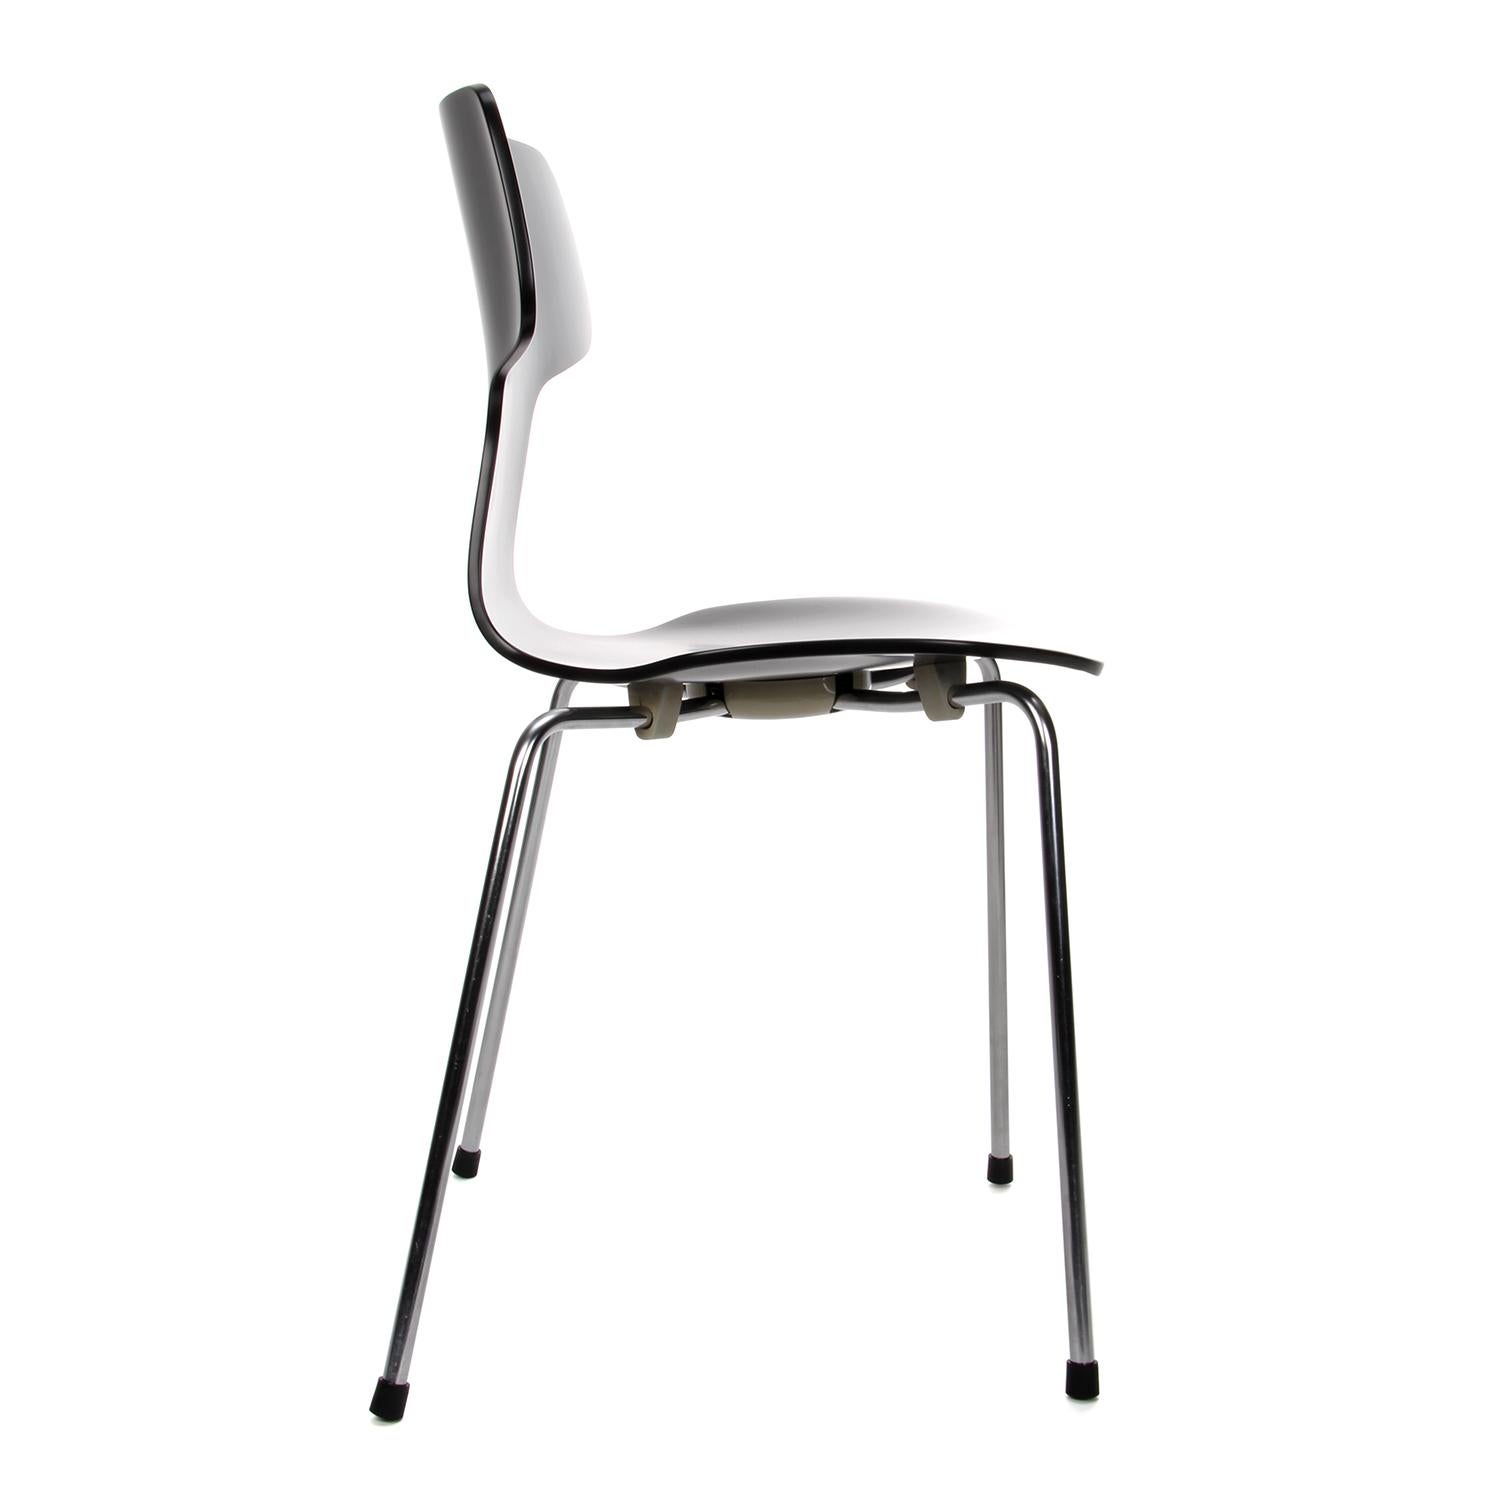 Scandinavian Modern T-CHAIR Model 3103 Chair by Arne Jacobsen, Fritz Hansen, 1957